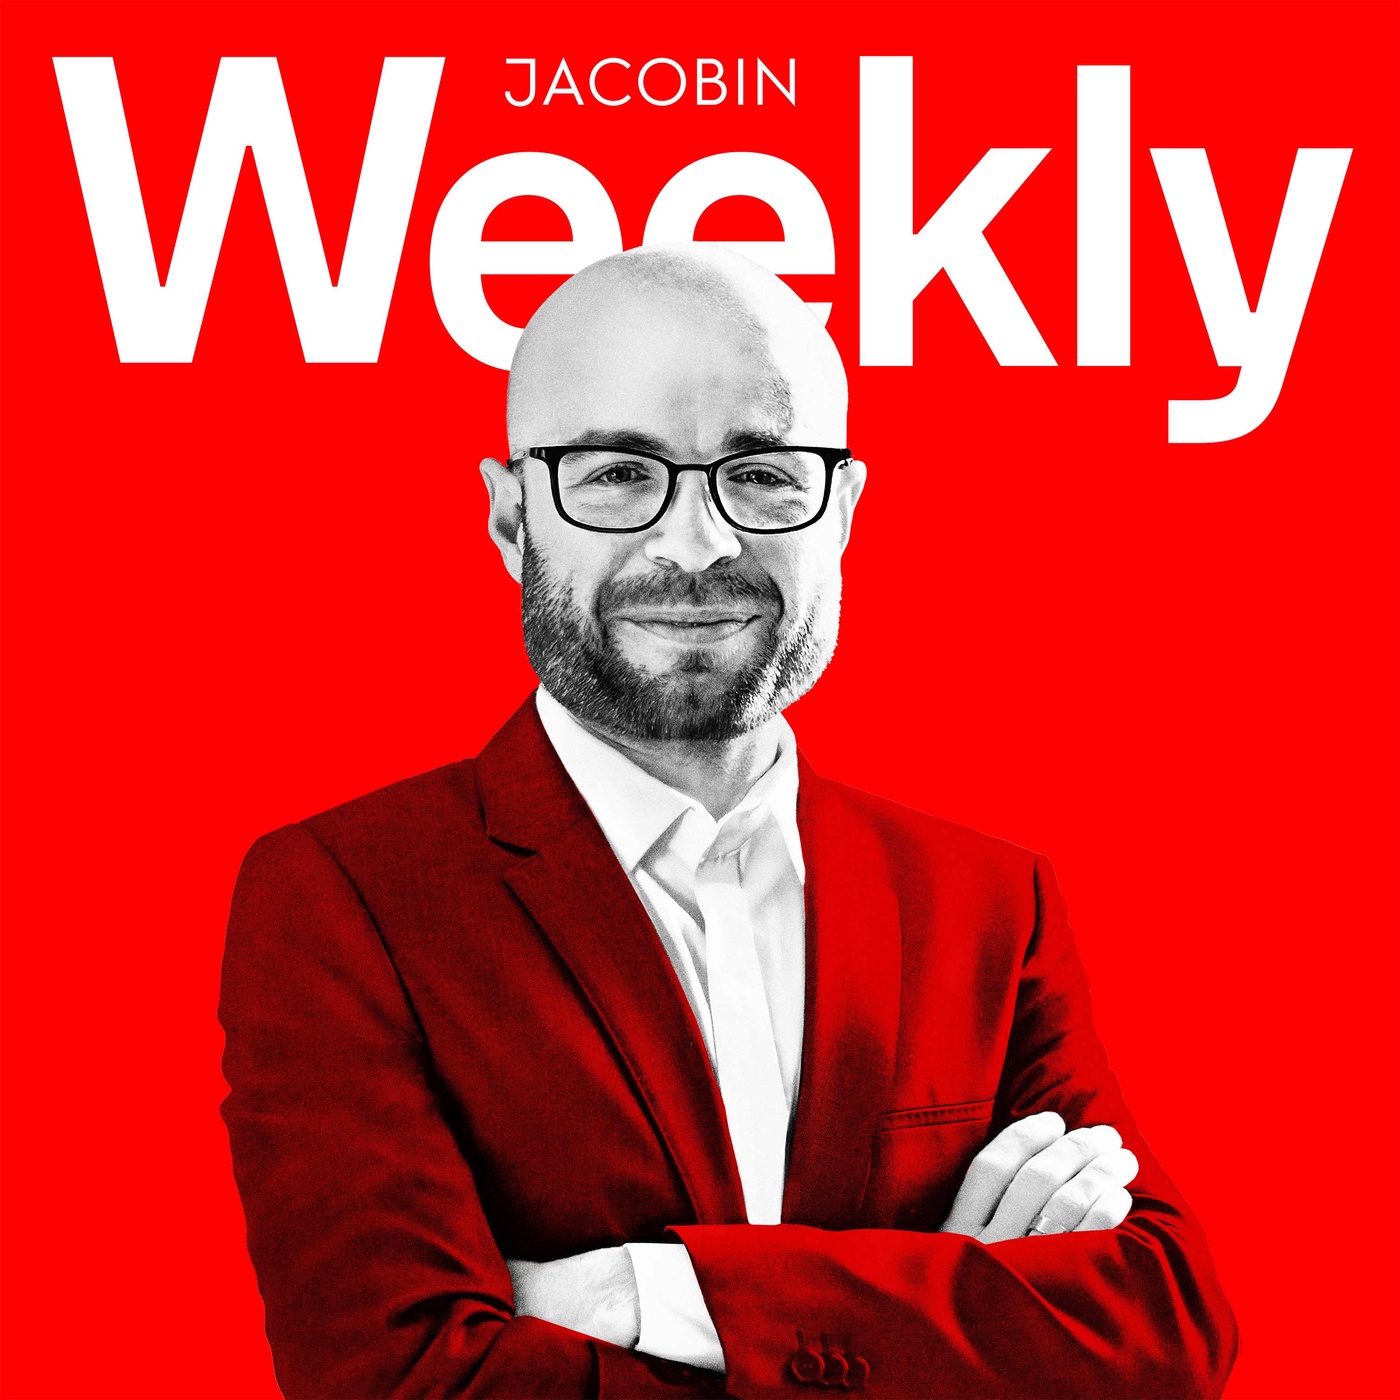 JACOBIN Weekly